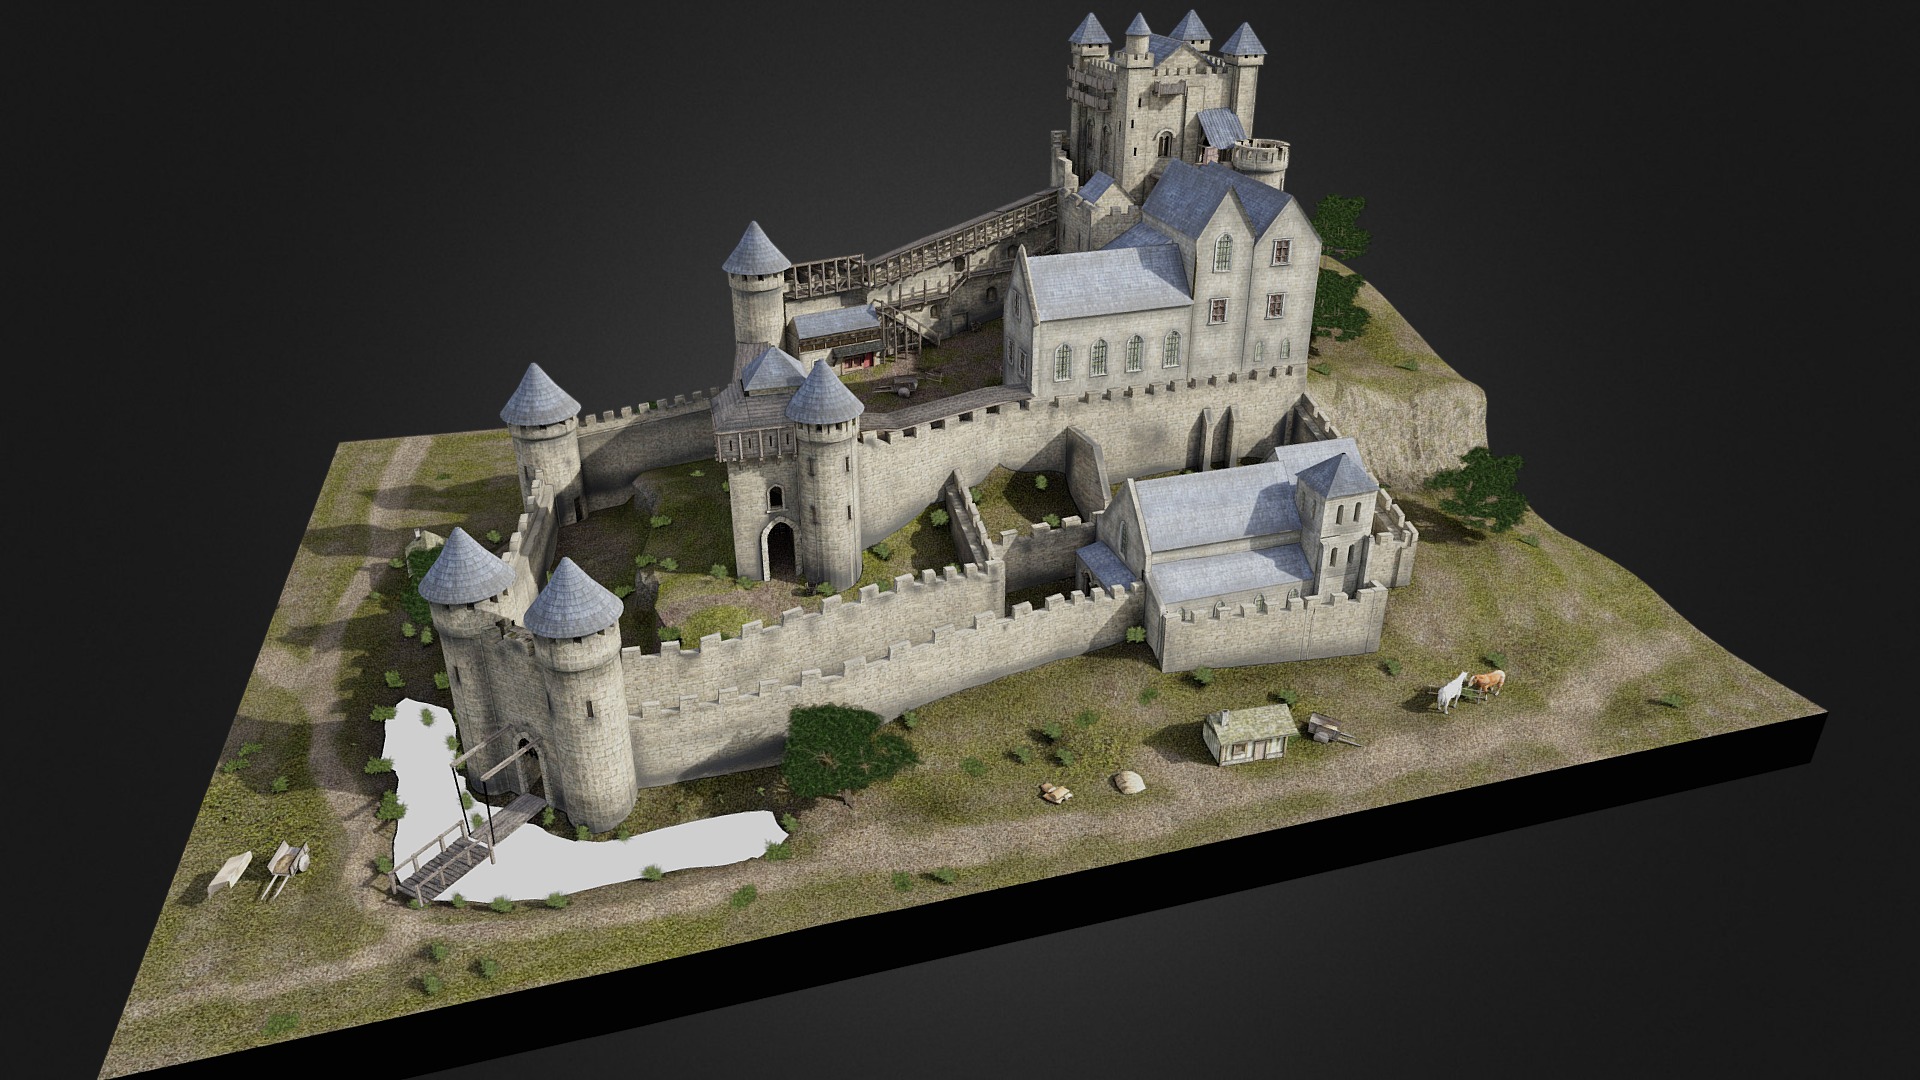 Reconstitution du château de Montrichard (Loir-et-Cher) à la fin du XVème siècle - Château de Montrichard, France - 3D model by C.daire (@chemins.phil.et.lou) 3d model